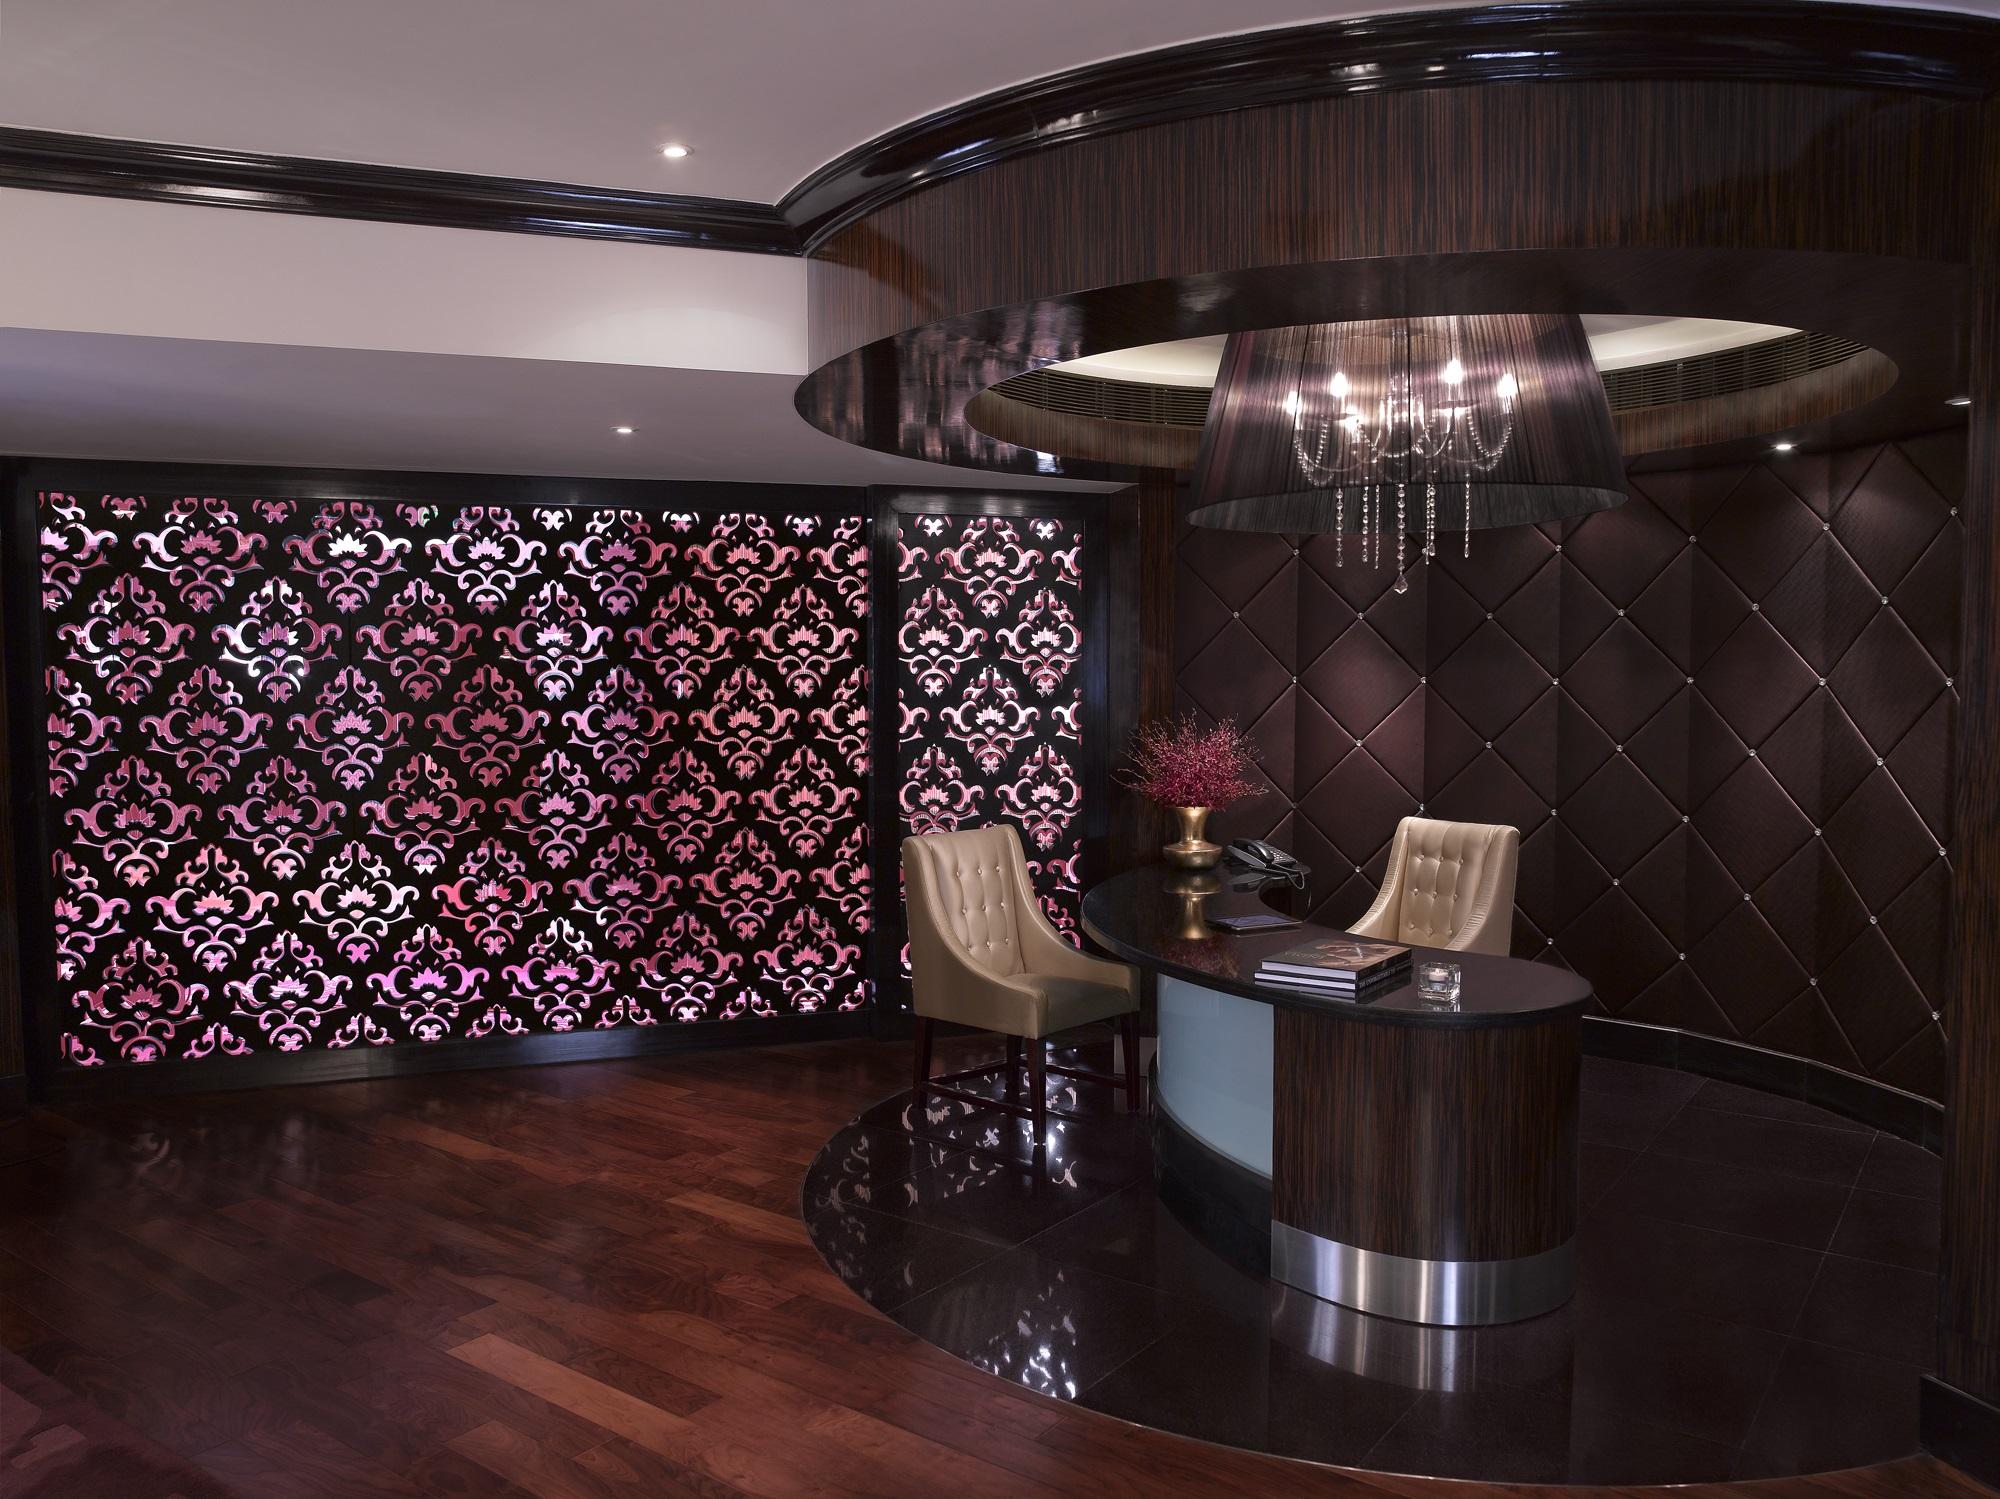 Sofitel Mumbai BKC Executive Club Lounge Reception